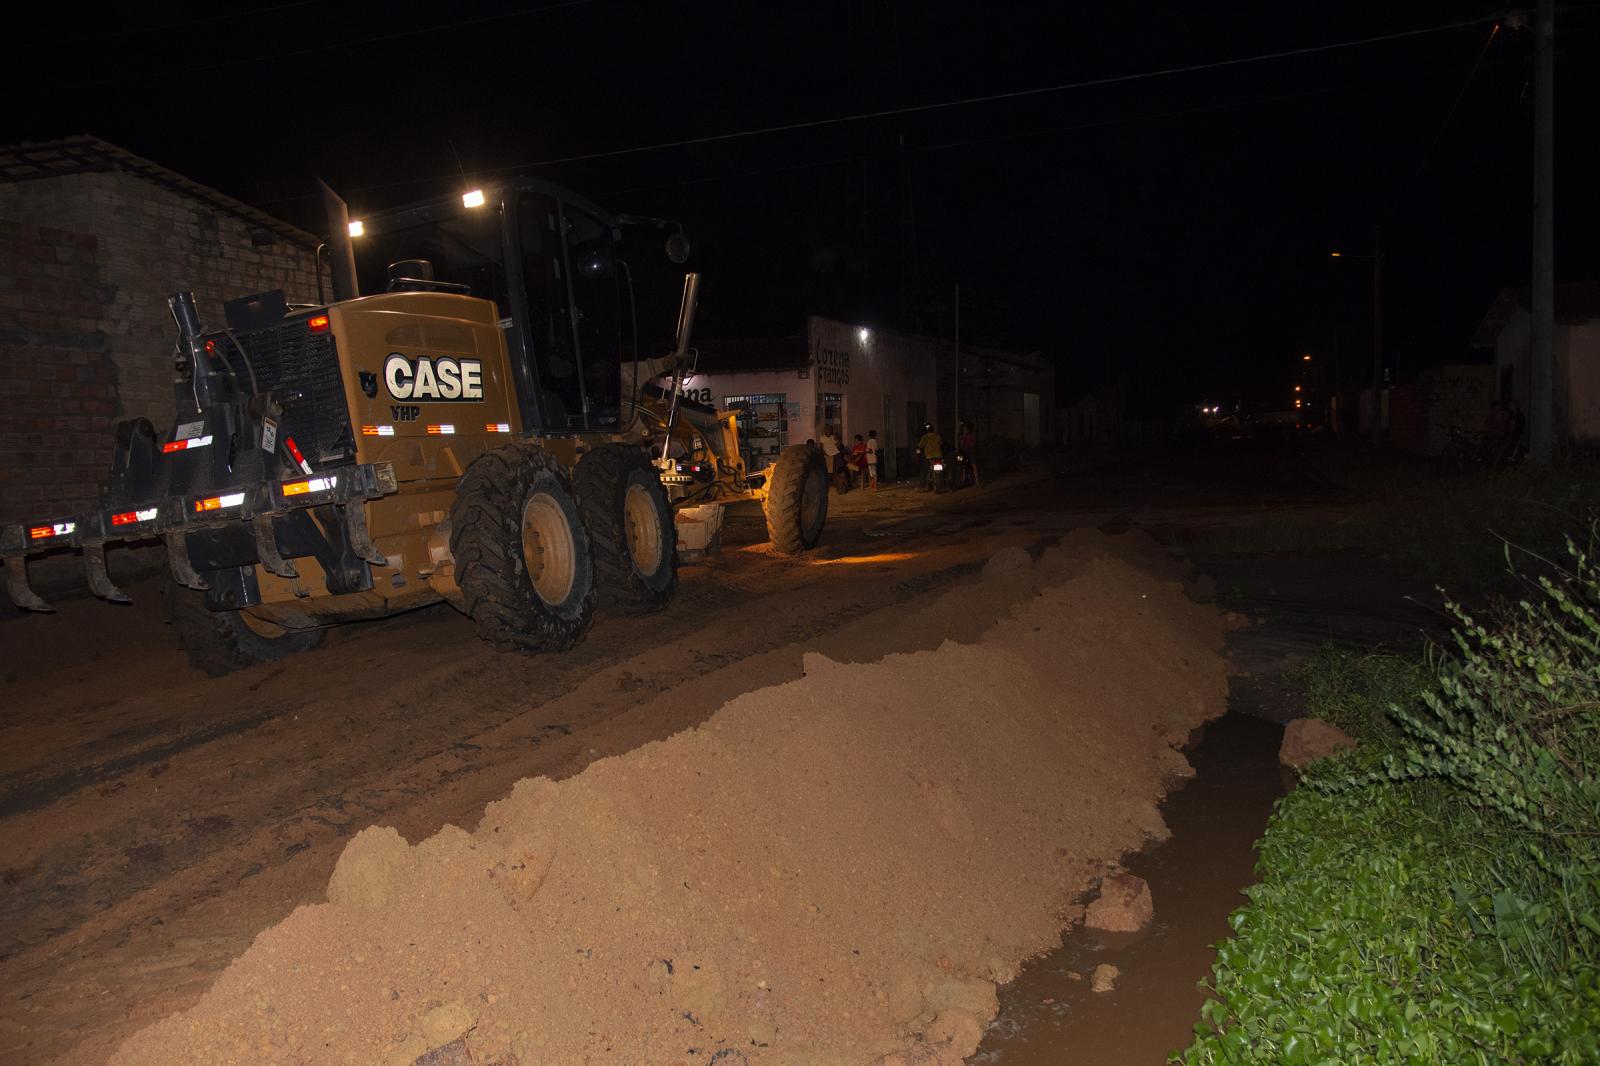 O Mutirão Rua Trafegável foi iniciado para recuperação das ruas de Maracaçumé